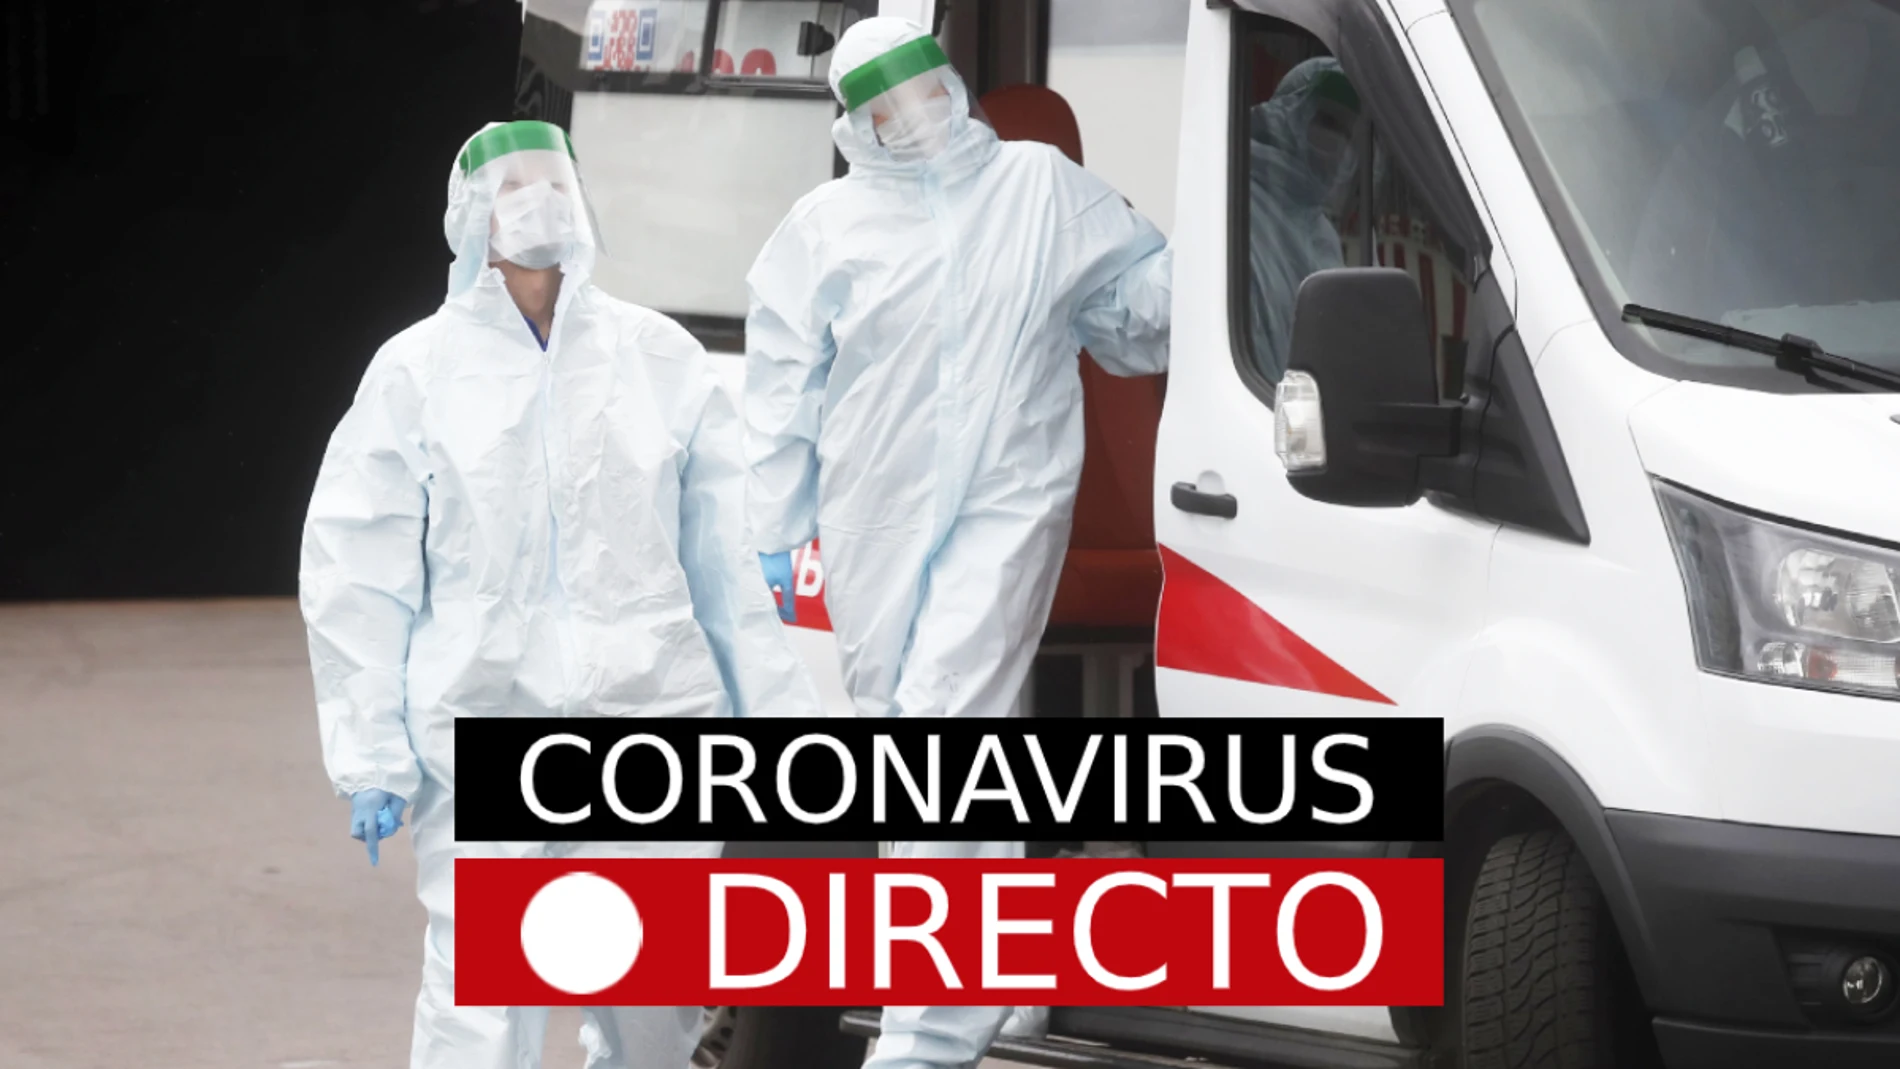 Coronavirus España, toque de queda en Madrid, hoy: Noticias de última hora del confinamiento por COVID-19, EN DIRECTO